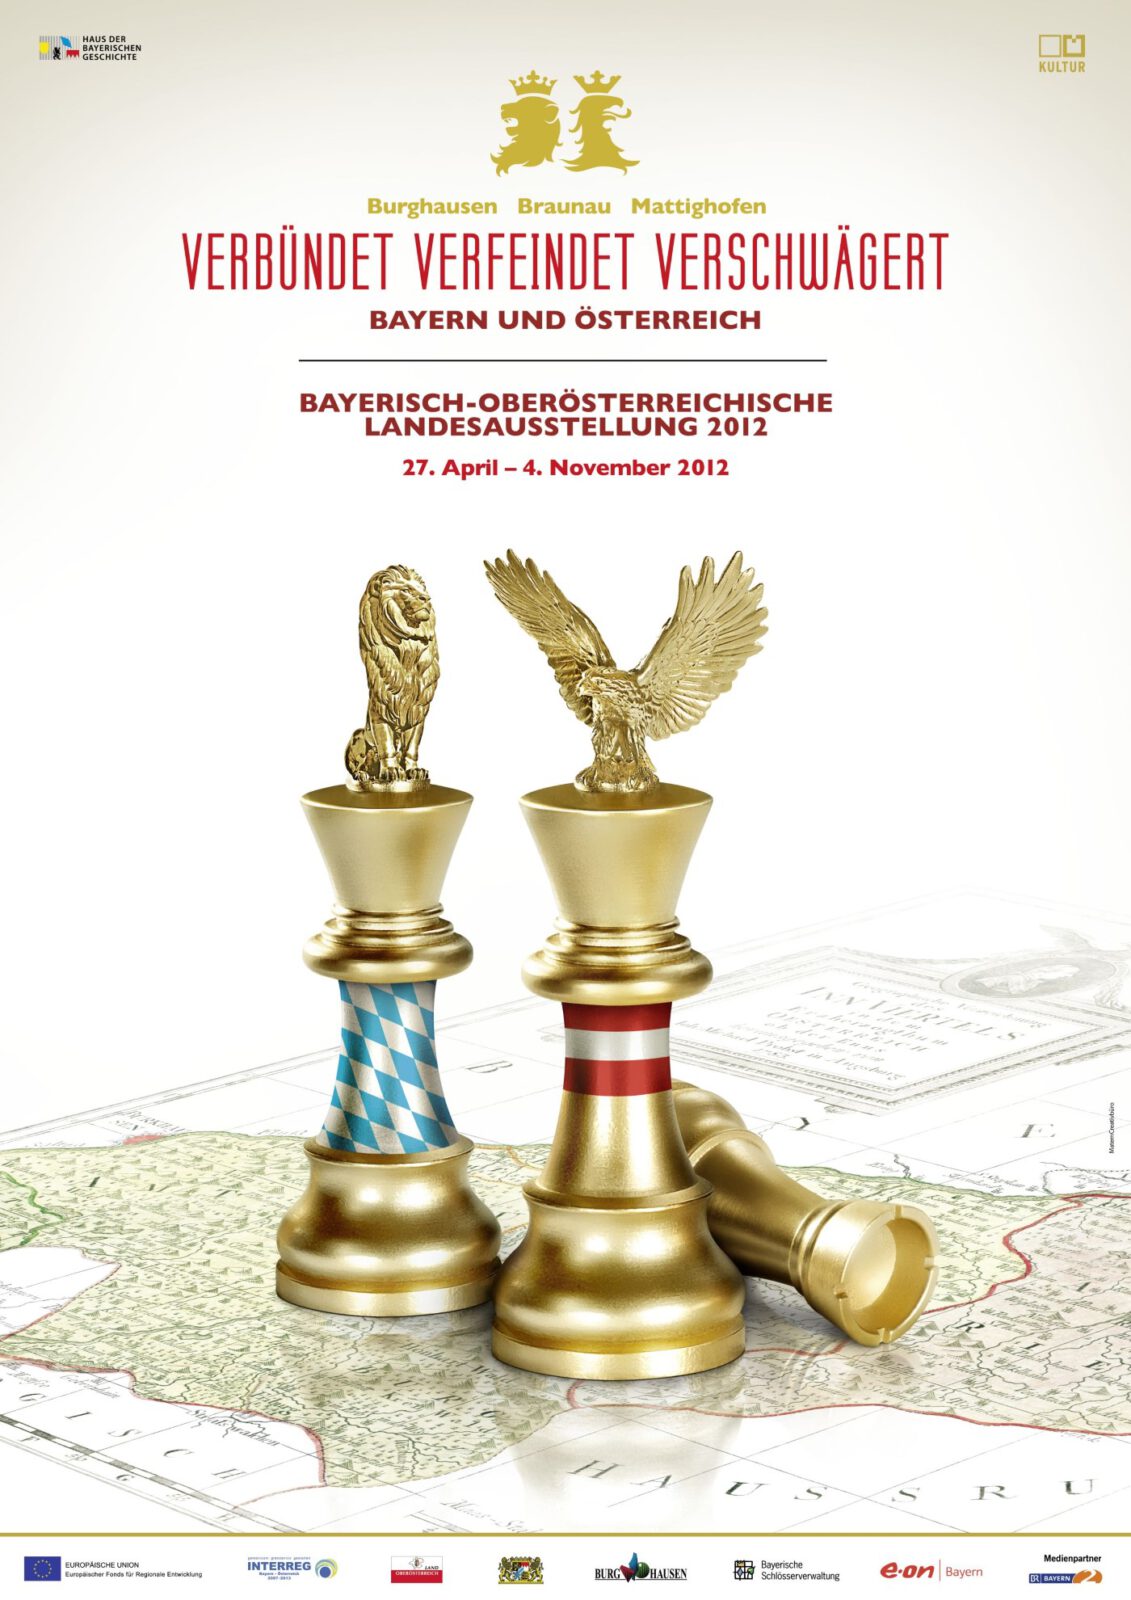 Logo der Bayerisch-Oberösterreichischen Landesausstellung 2012 in Burghausen, Braunau und Mattighofen. Drei Schachfiguren auf einer Landkarte. Eine stehende Schachfigur mit dem bayerischen Löwen und den weiß-blauen Rauten. Eine zweite stehende Schachfigur mit dem österreichischen Adler und rot-weiß-roten Streifen. Die dritte Schachfigur liegt .